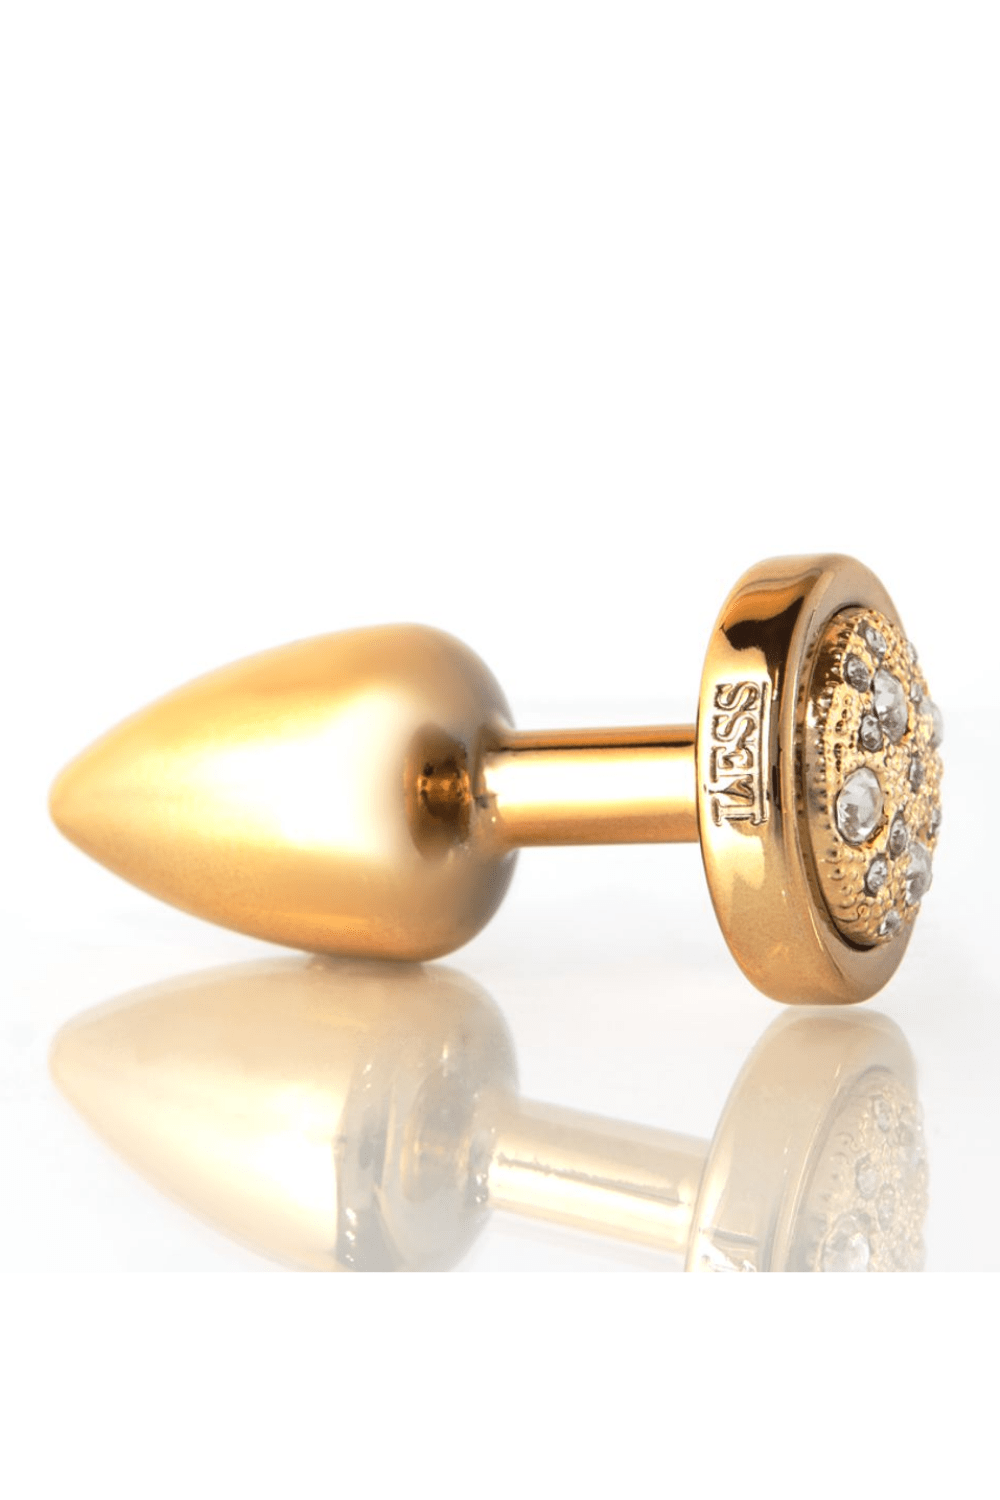 Plug LESS M (ABS) Dourado com Pedra Cravejada Dourada - Tamanho M